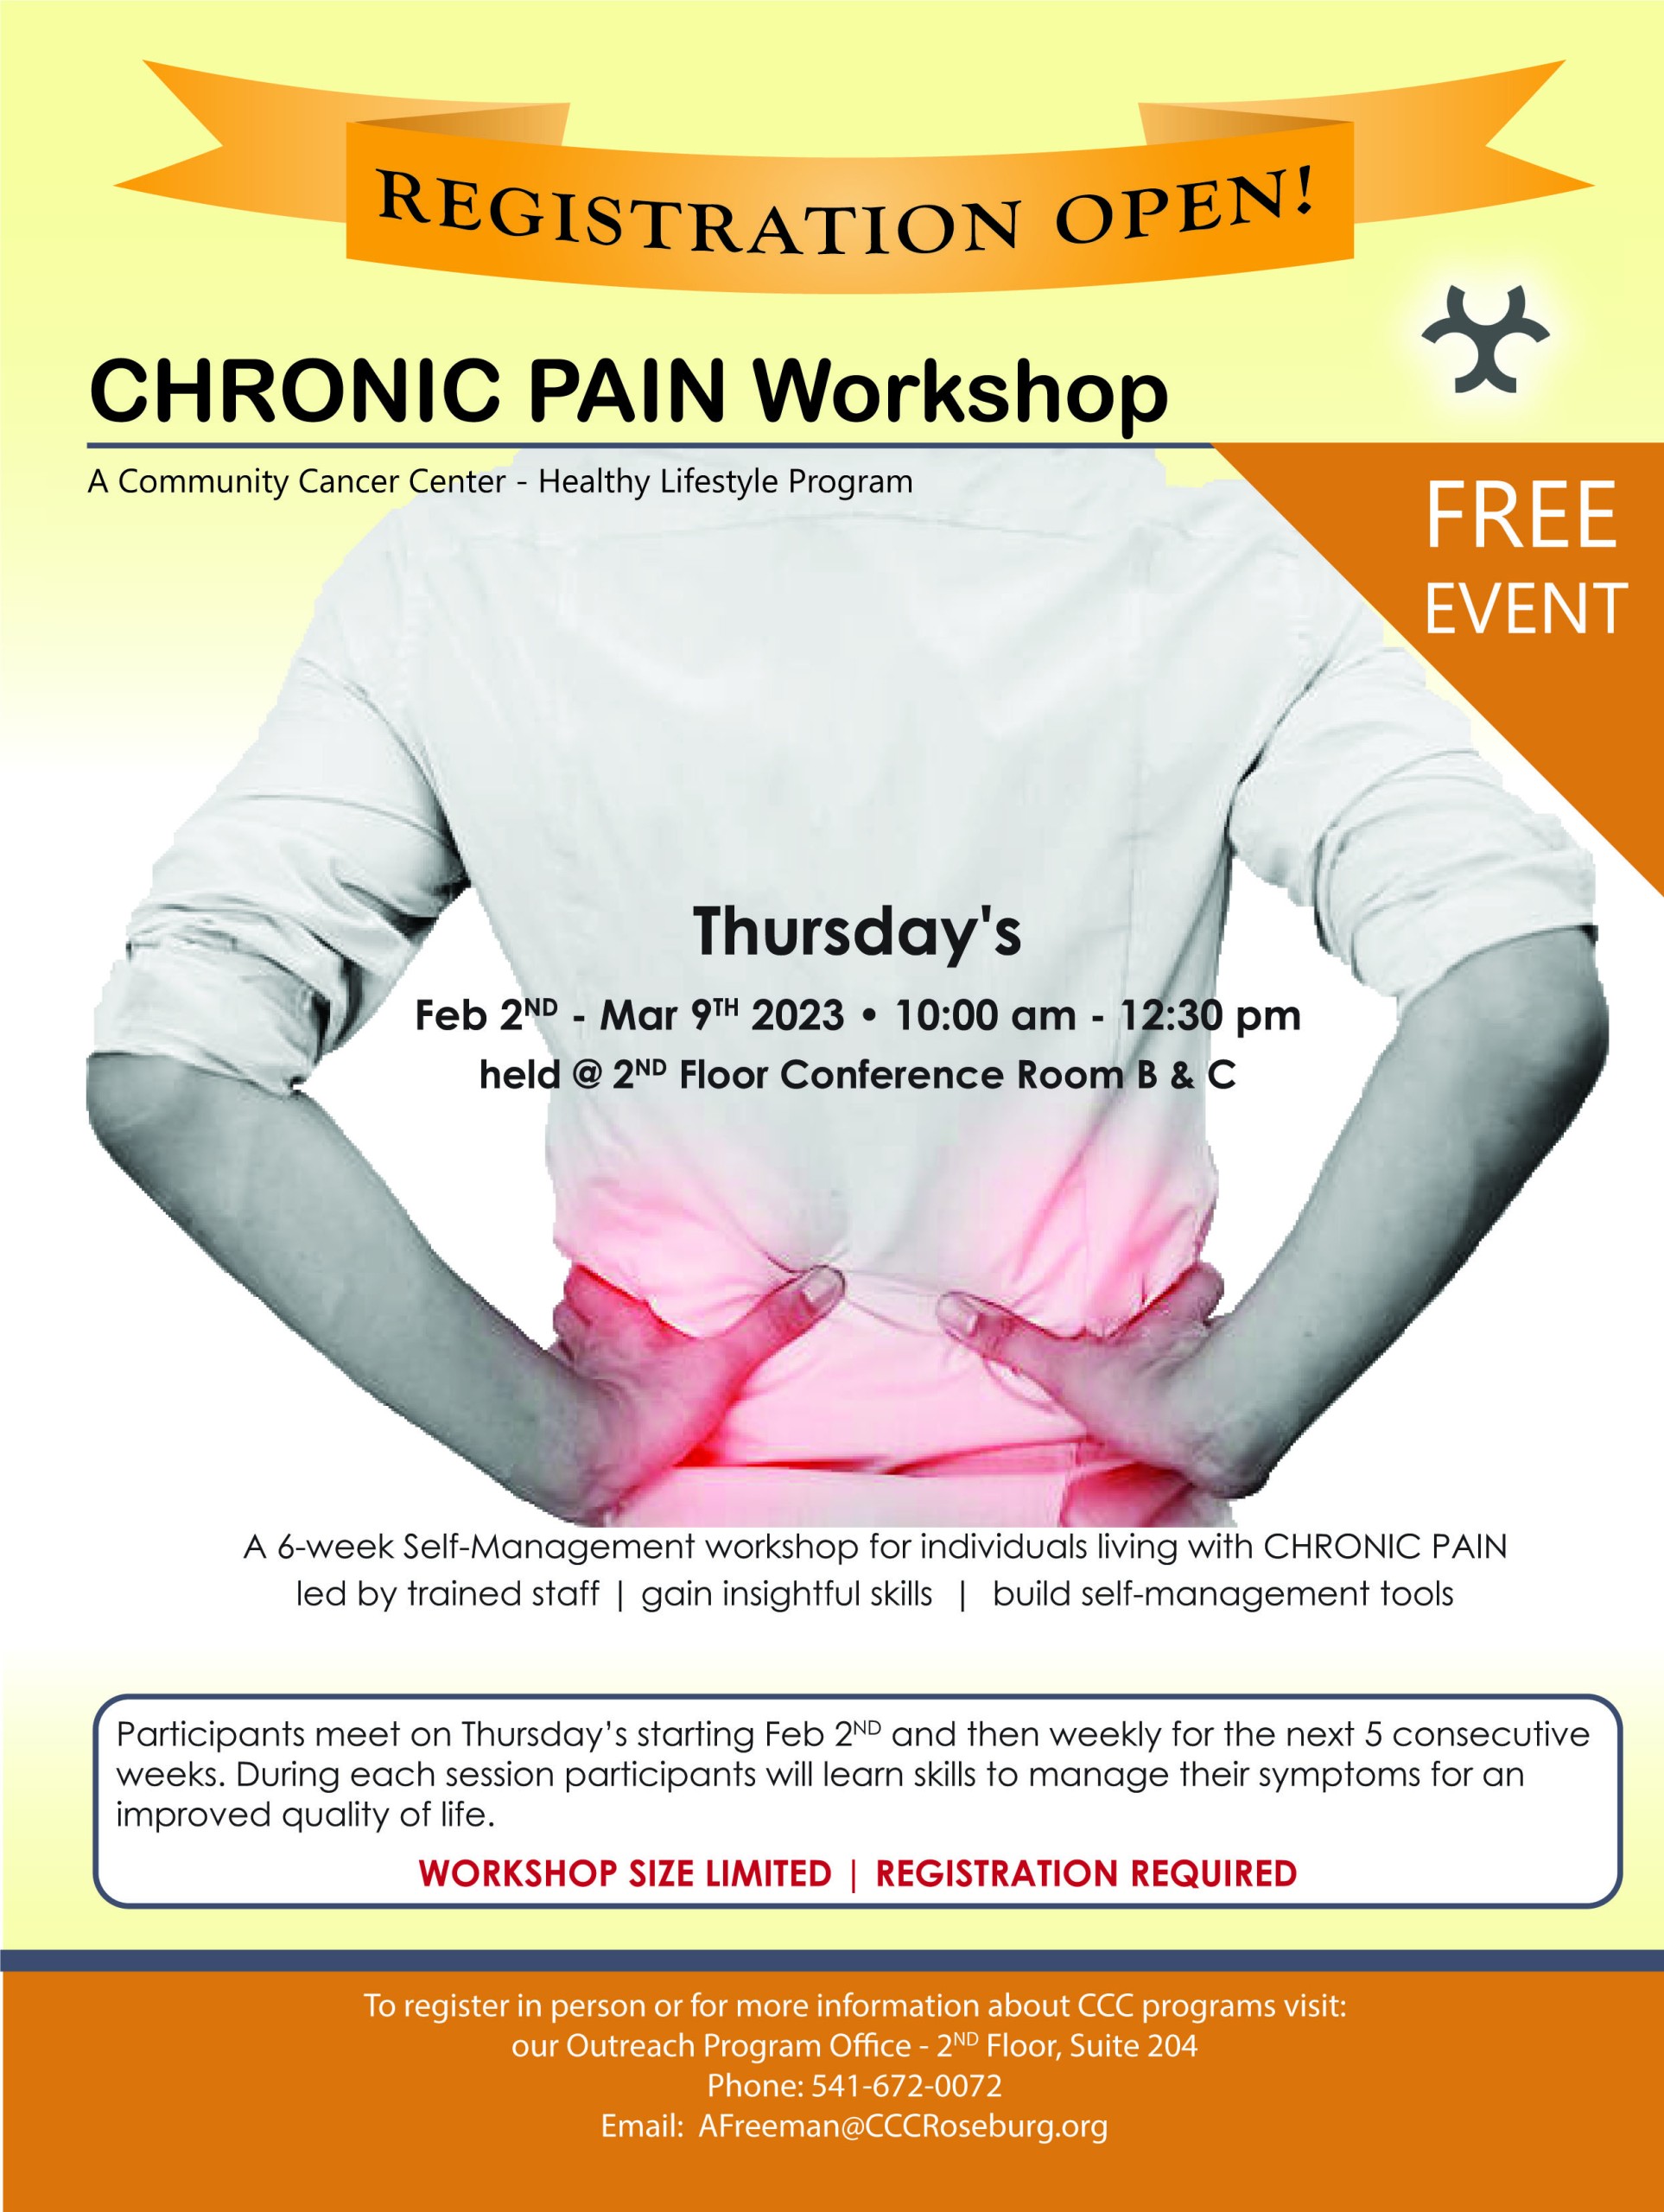 Chronic Pain Management Workshop